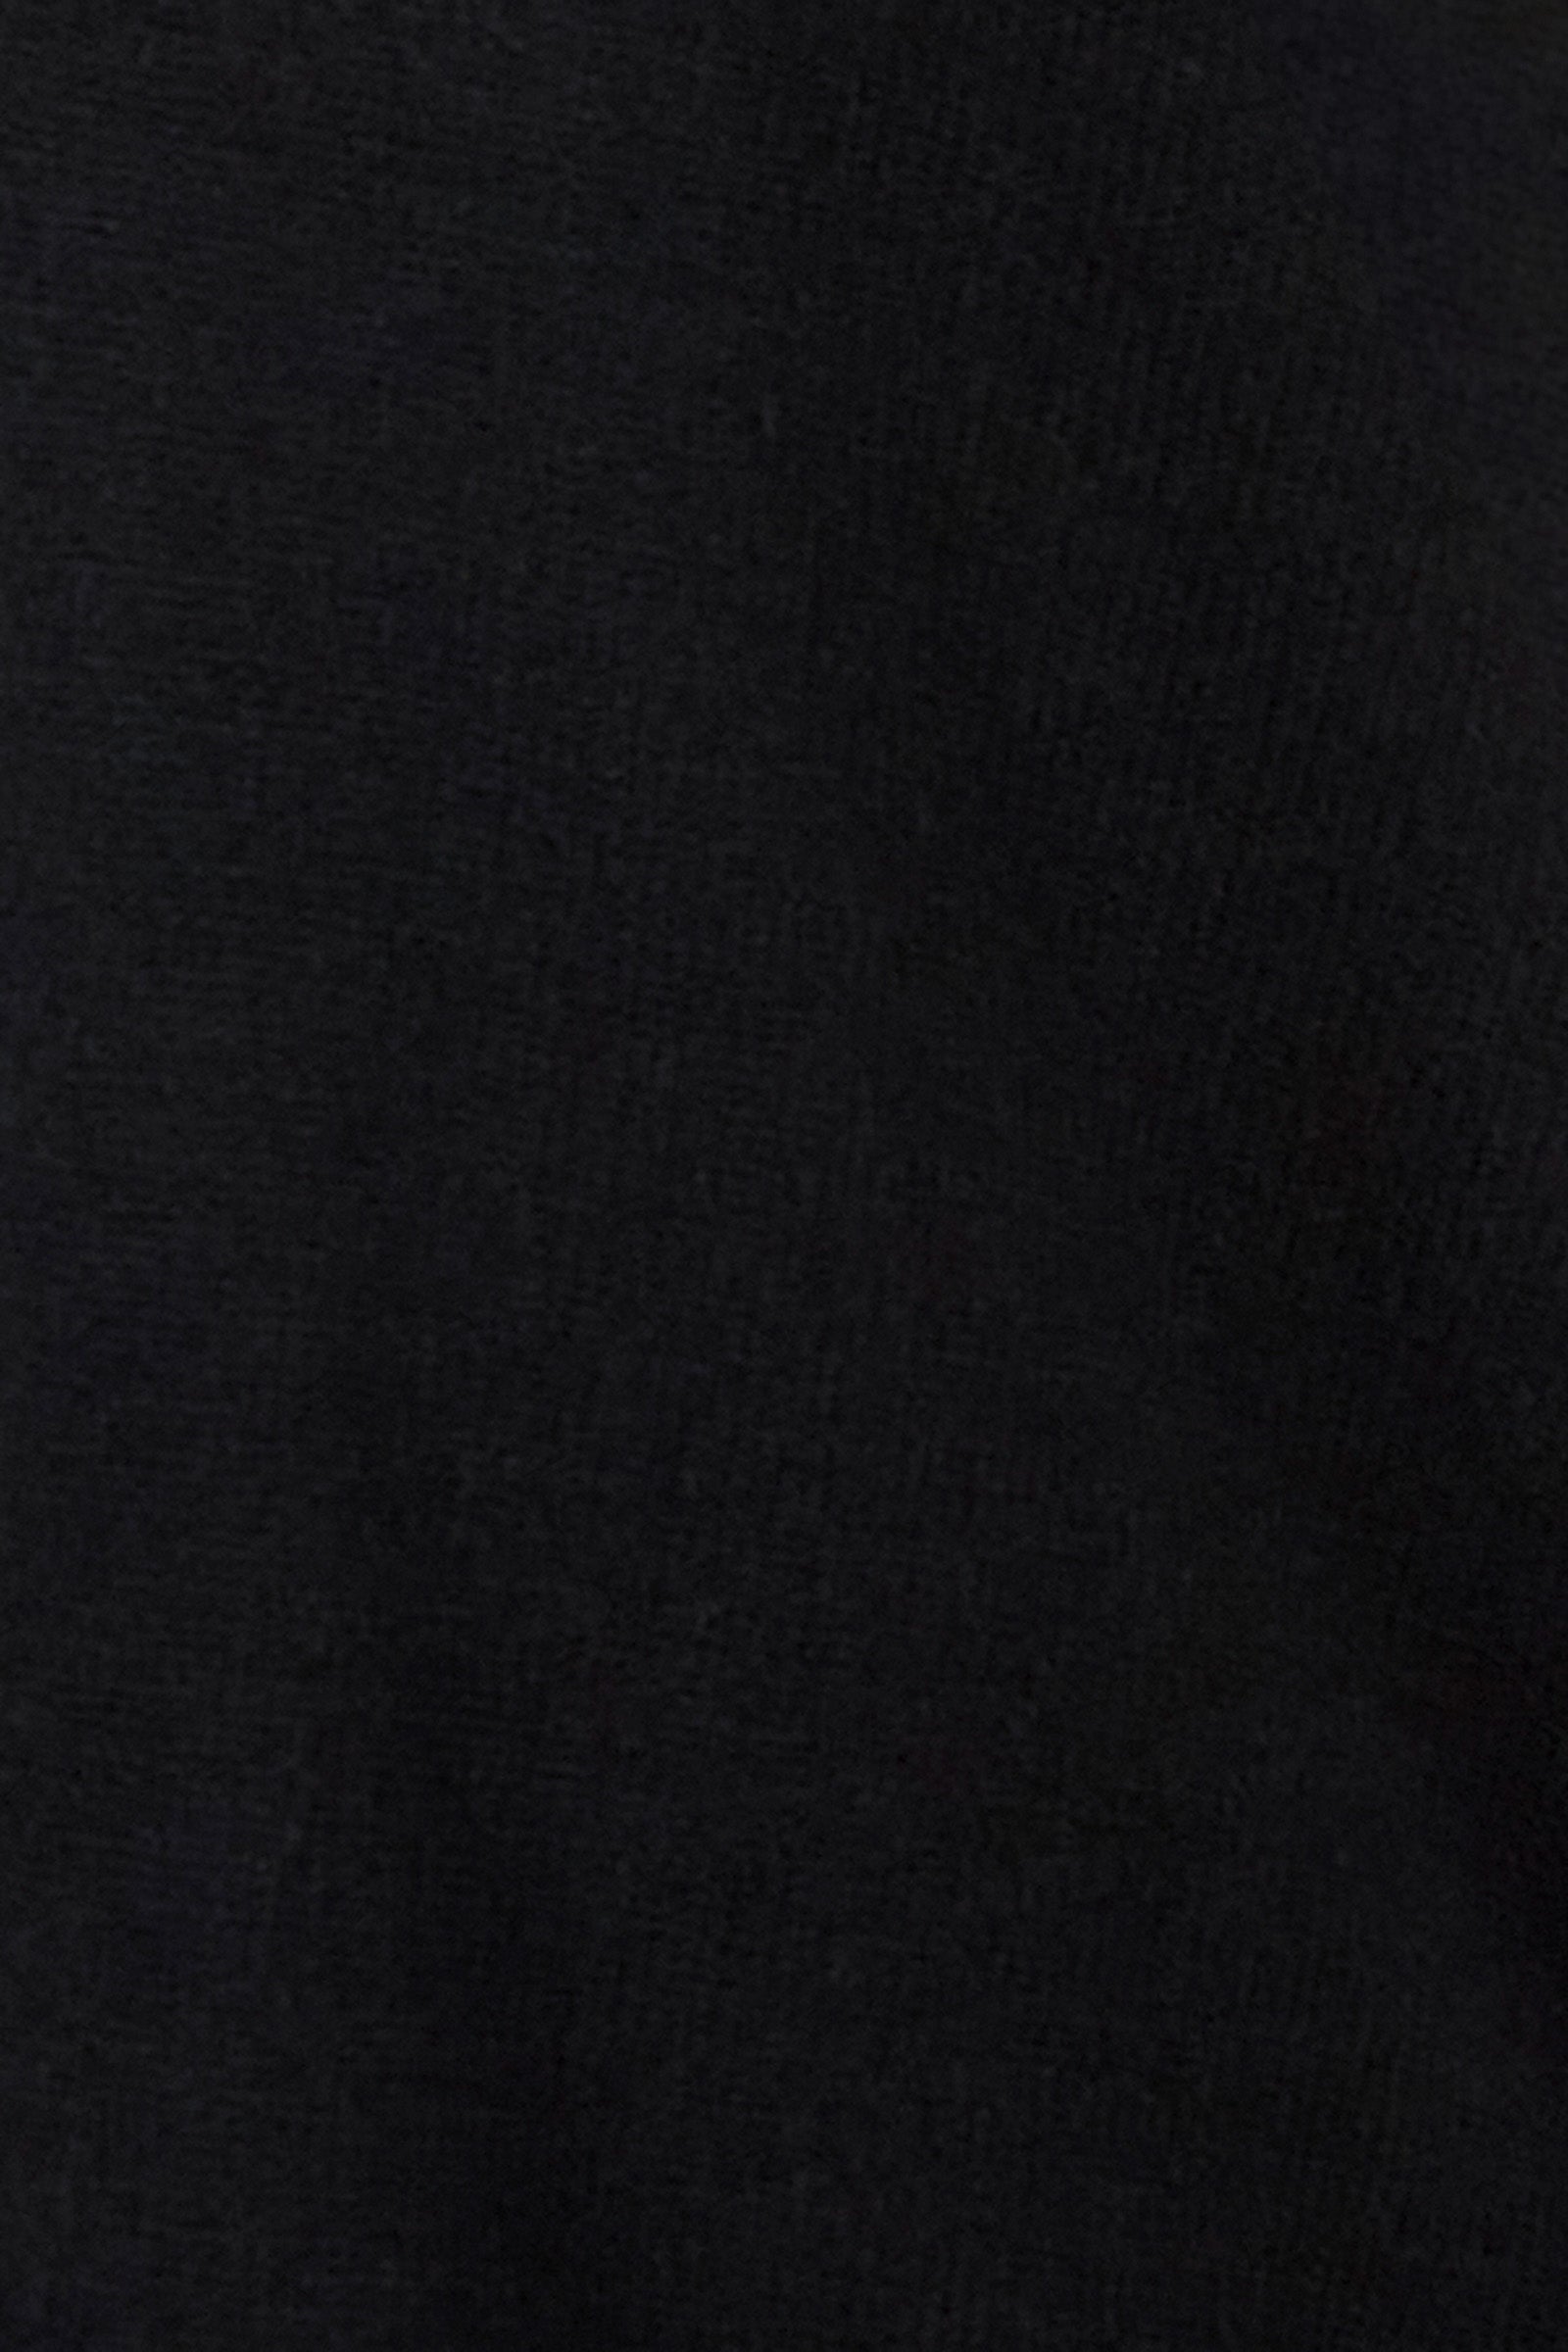 Nakako Pocket Cardigan - Ebony - eb&ive Clothing - Knit Cardigan Short